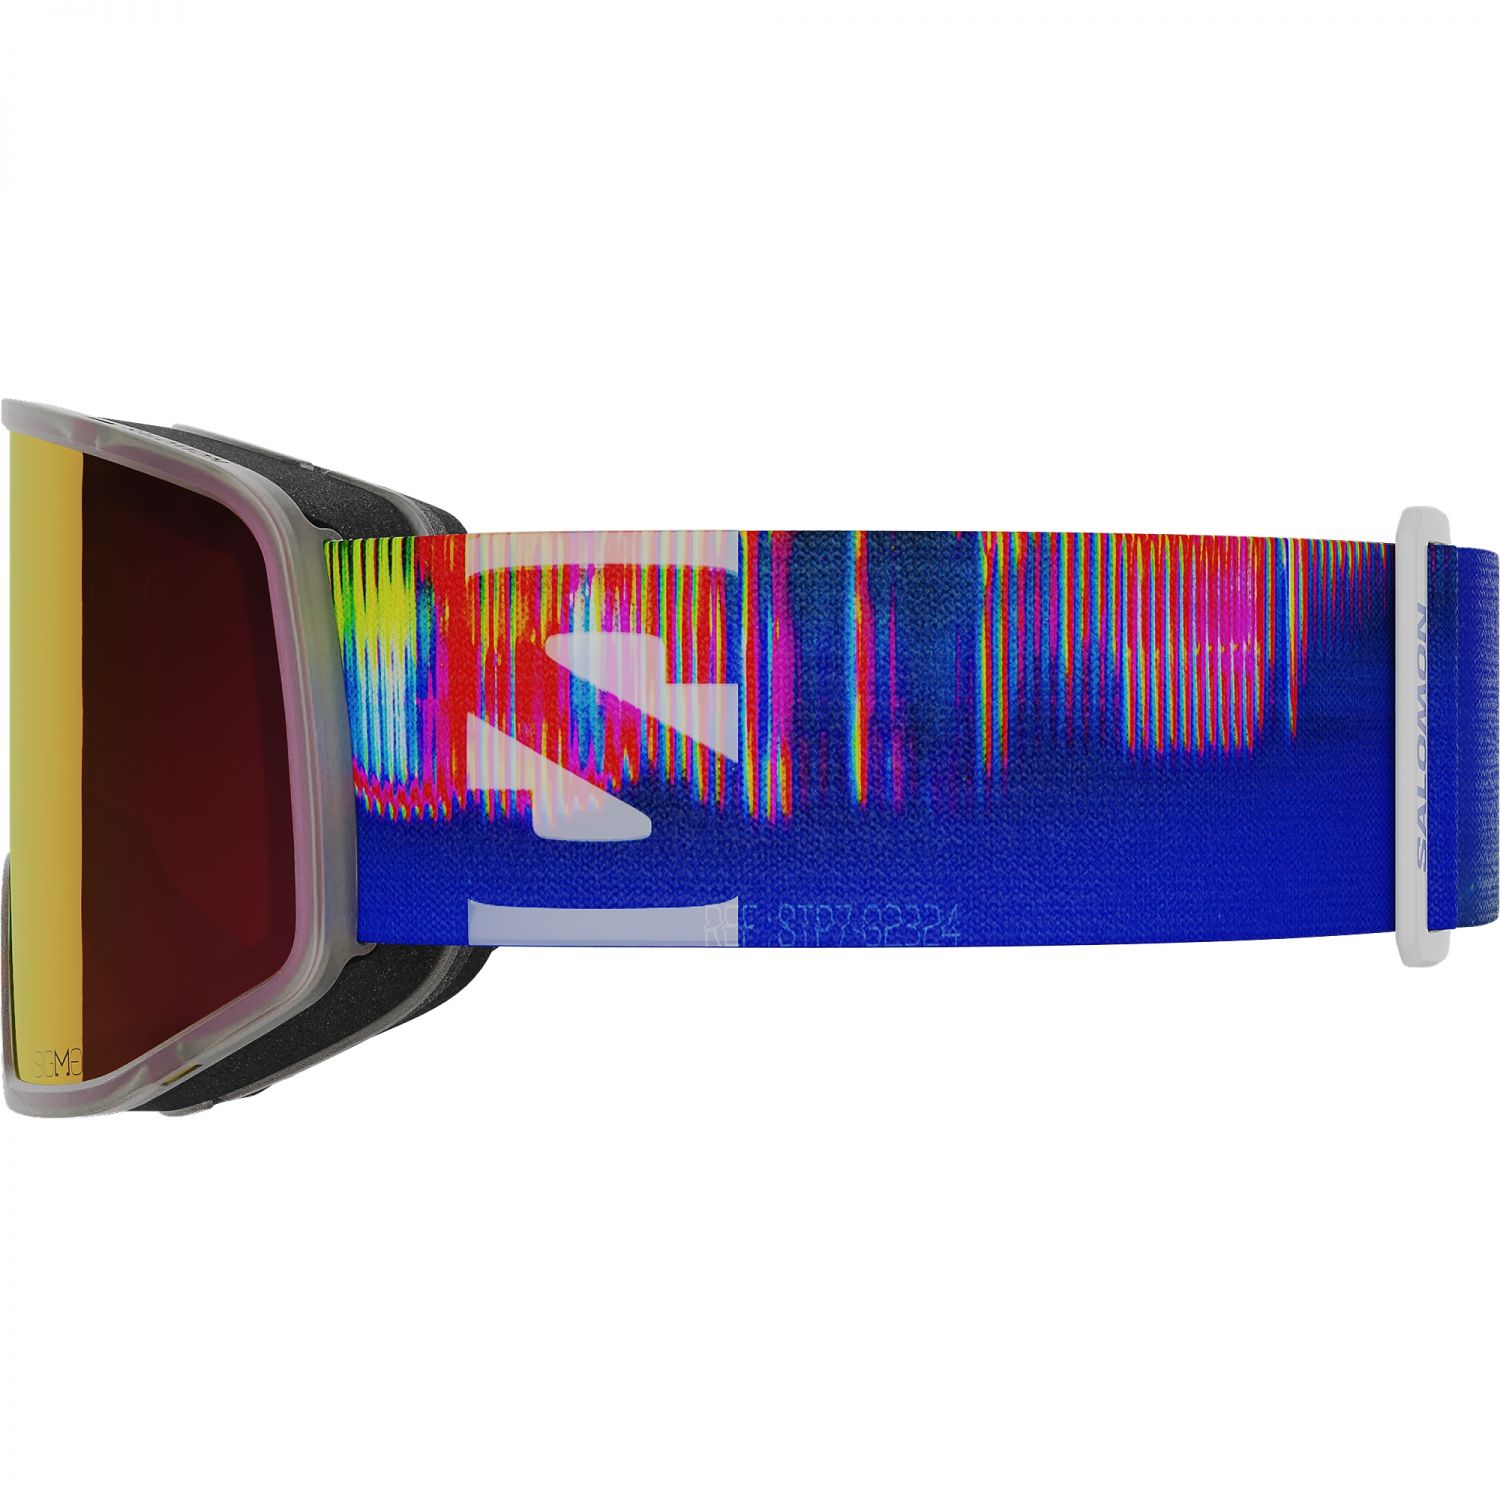 Salomon Sentry Pro Sigma, ski goggles (OTG), translucent frozen